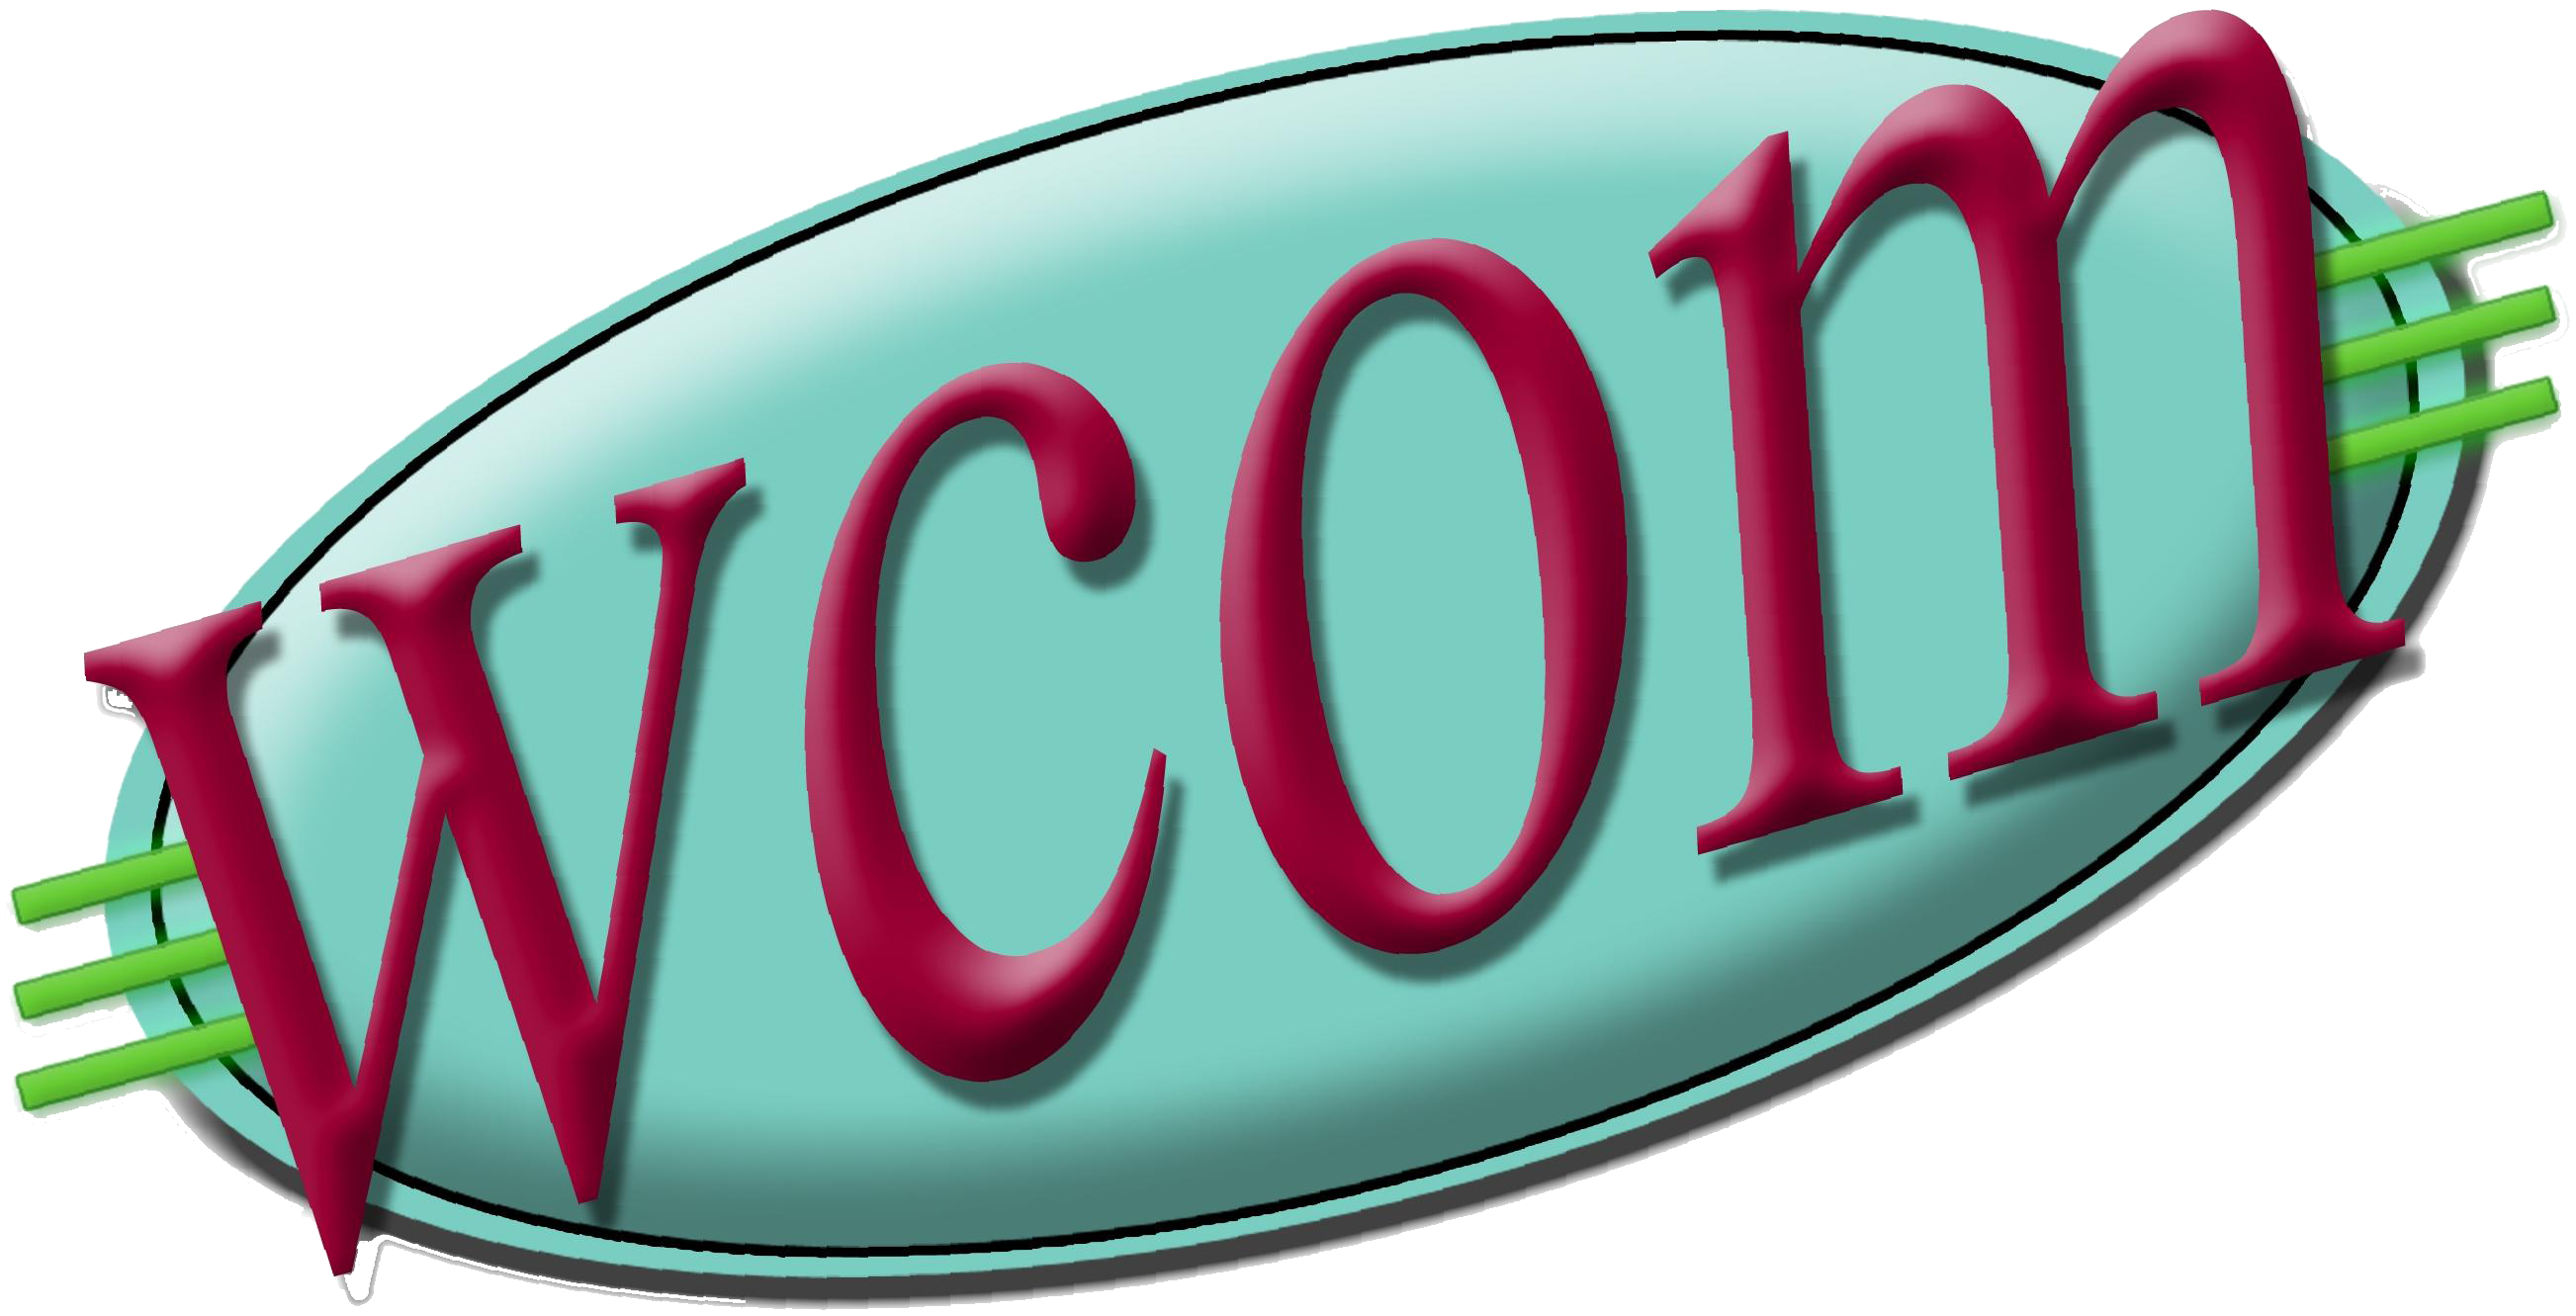 WCOM-LP 103.5 FM - Logo [color]